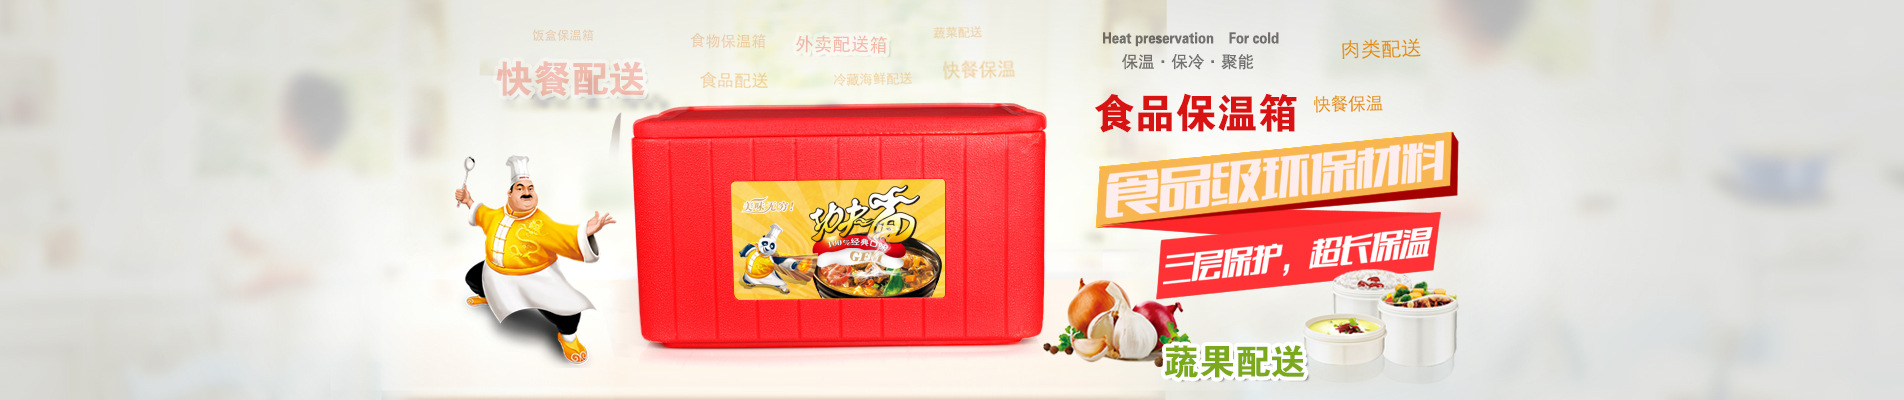 广州 食品保温箱